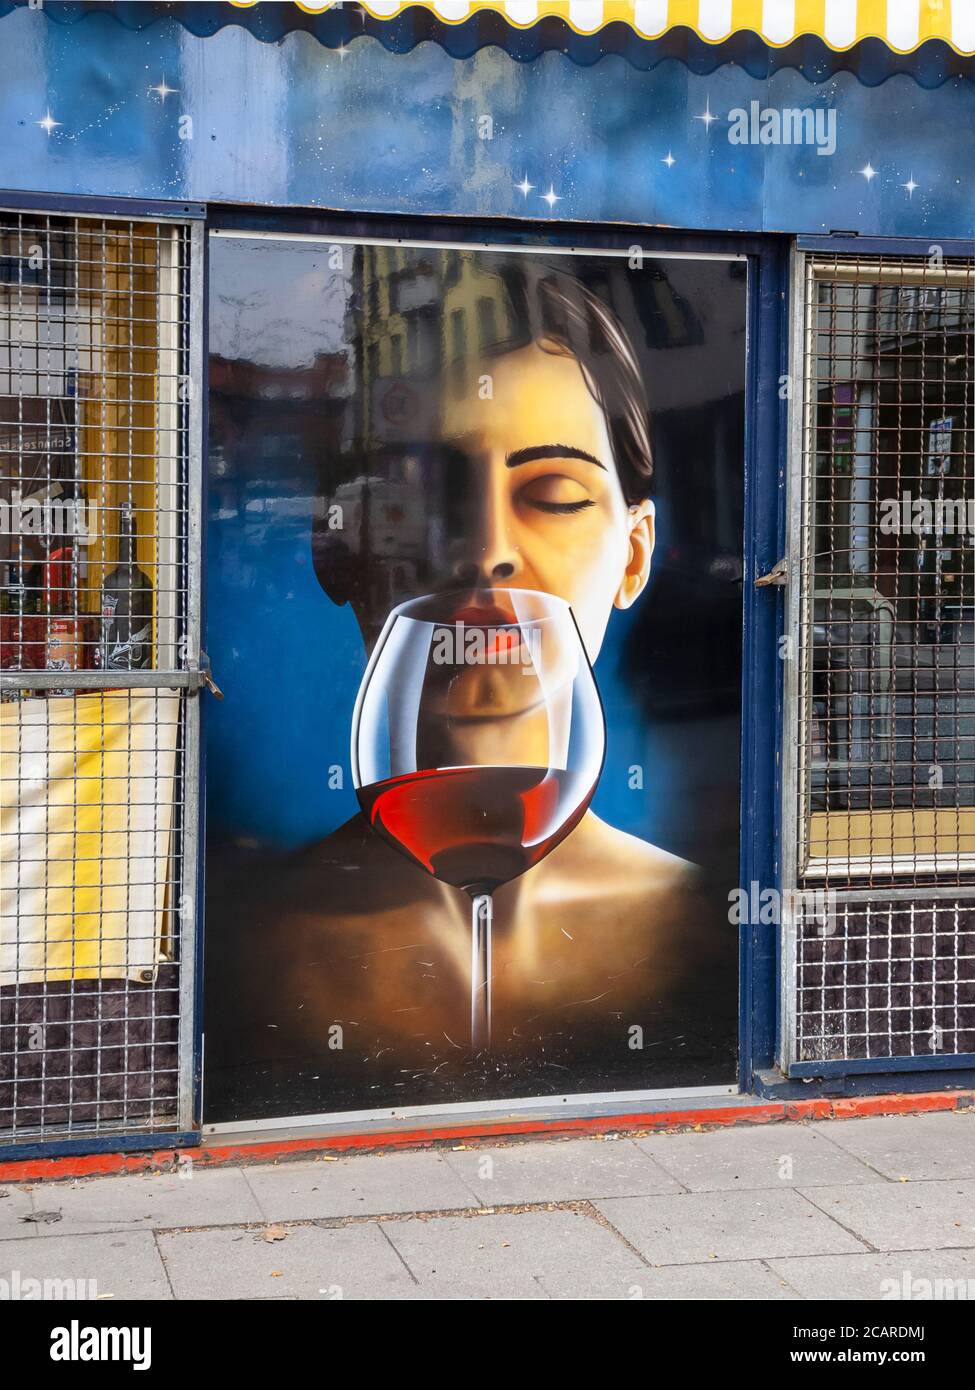 Illustration einer Frau, die mit geschlossenen Augen Wein genießt, Schanzenviertel, Hamburg, April 22, 2012. Stockfoto